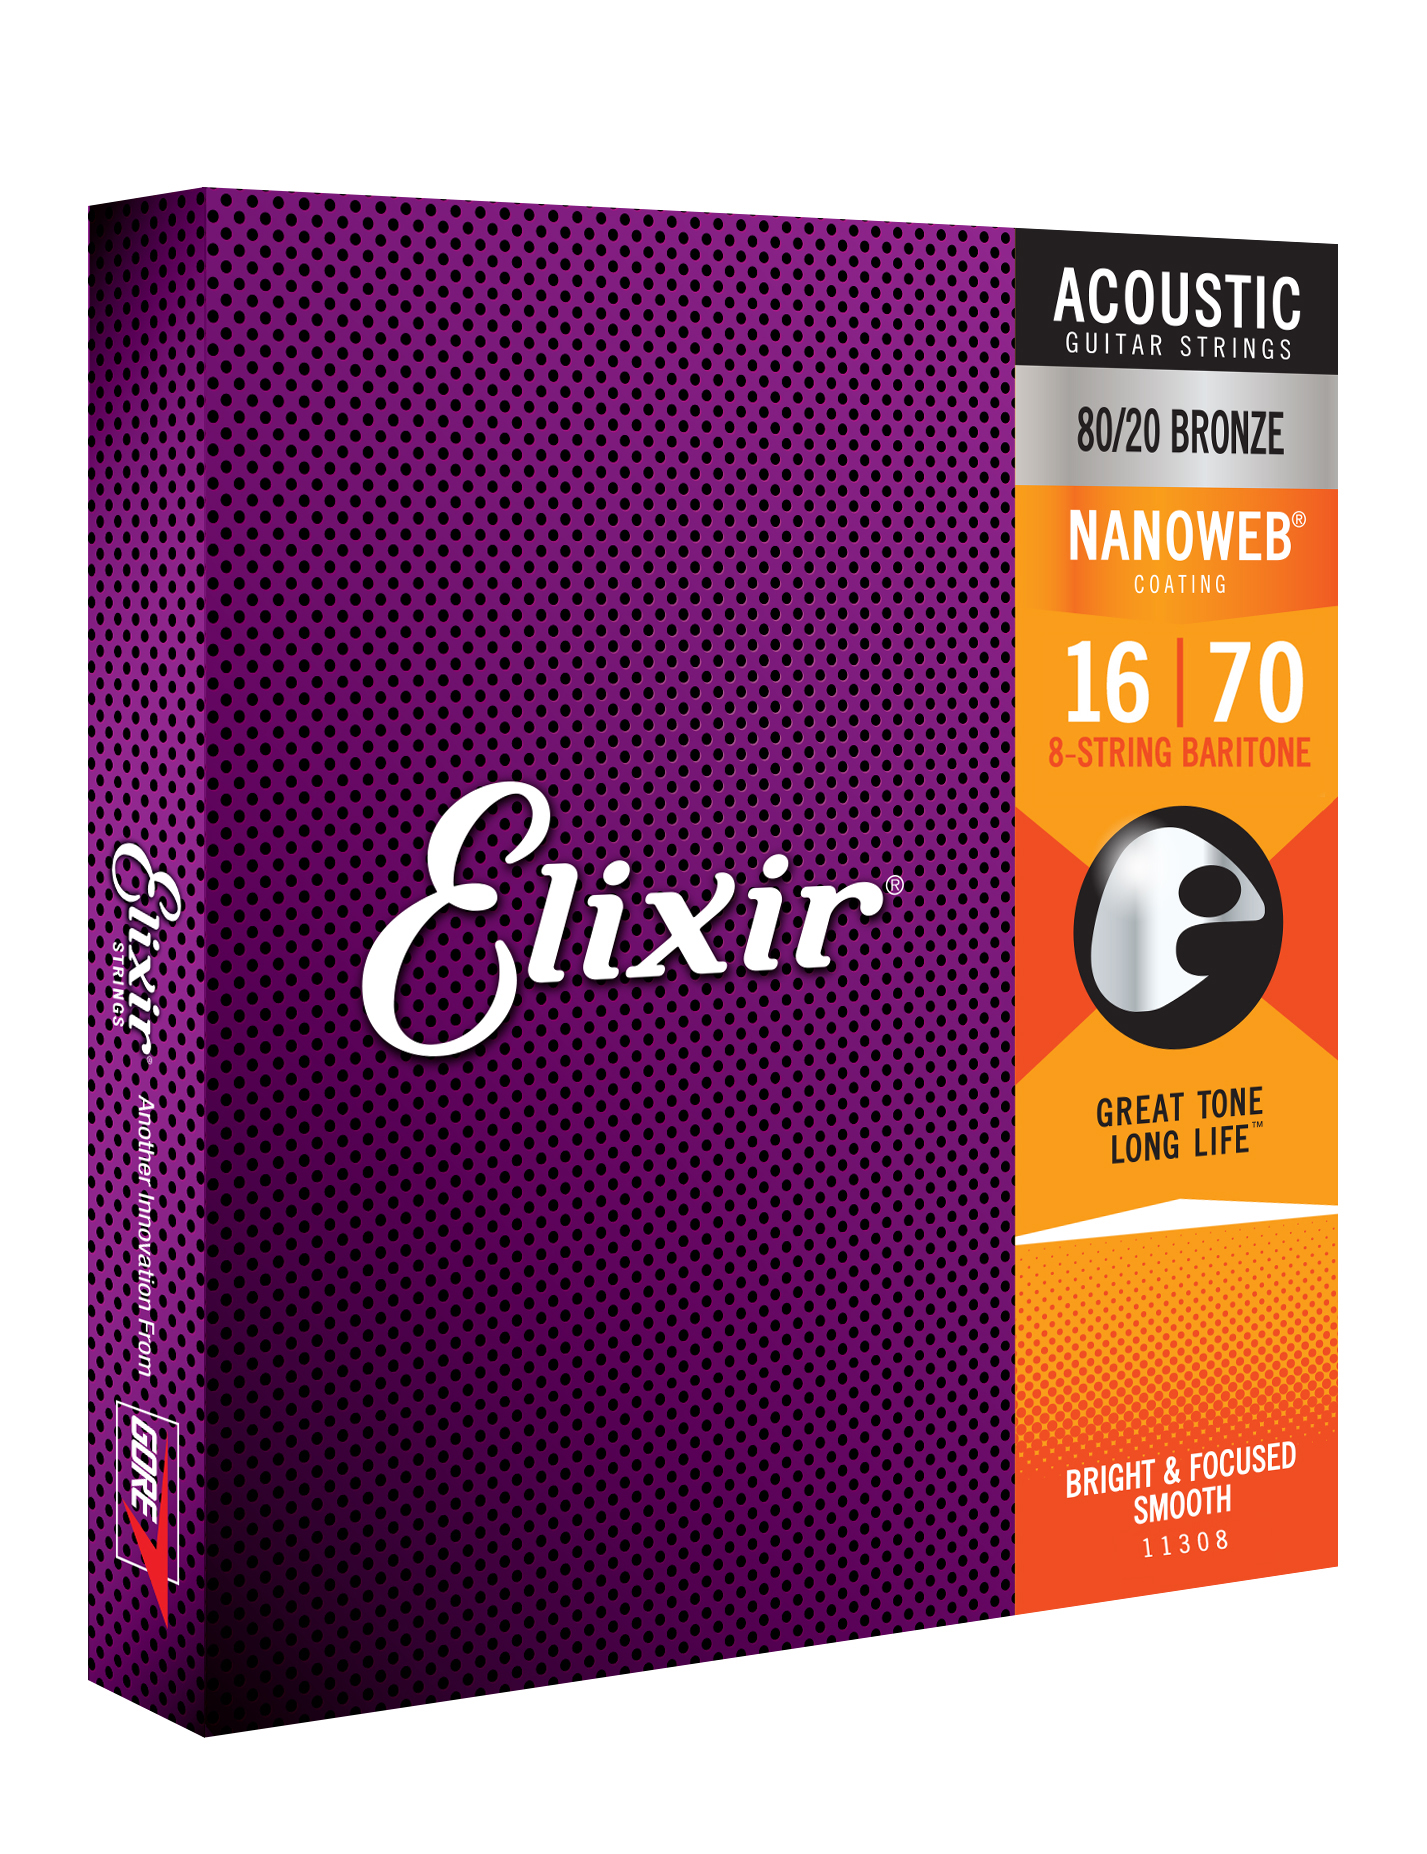 Elixir 11308 8-string Nanoweb 80/20 Bronze Acoustic Guitar 8c Baritone 16-70 - Cordes Guitare Acoustique - Variation 1